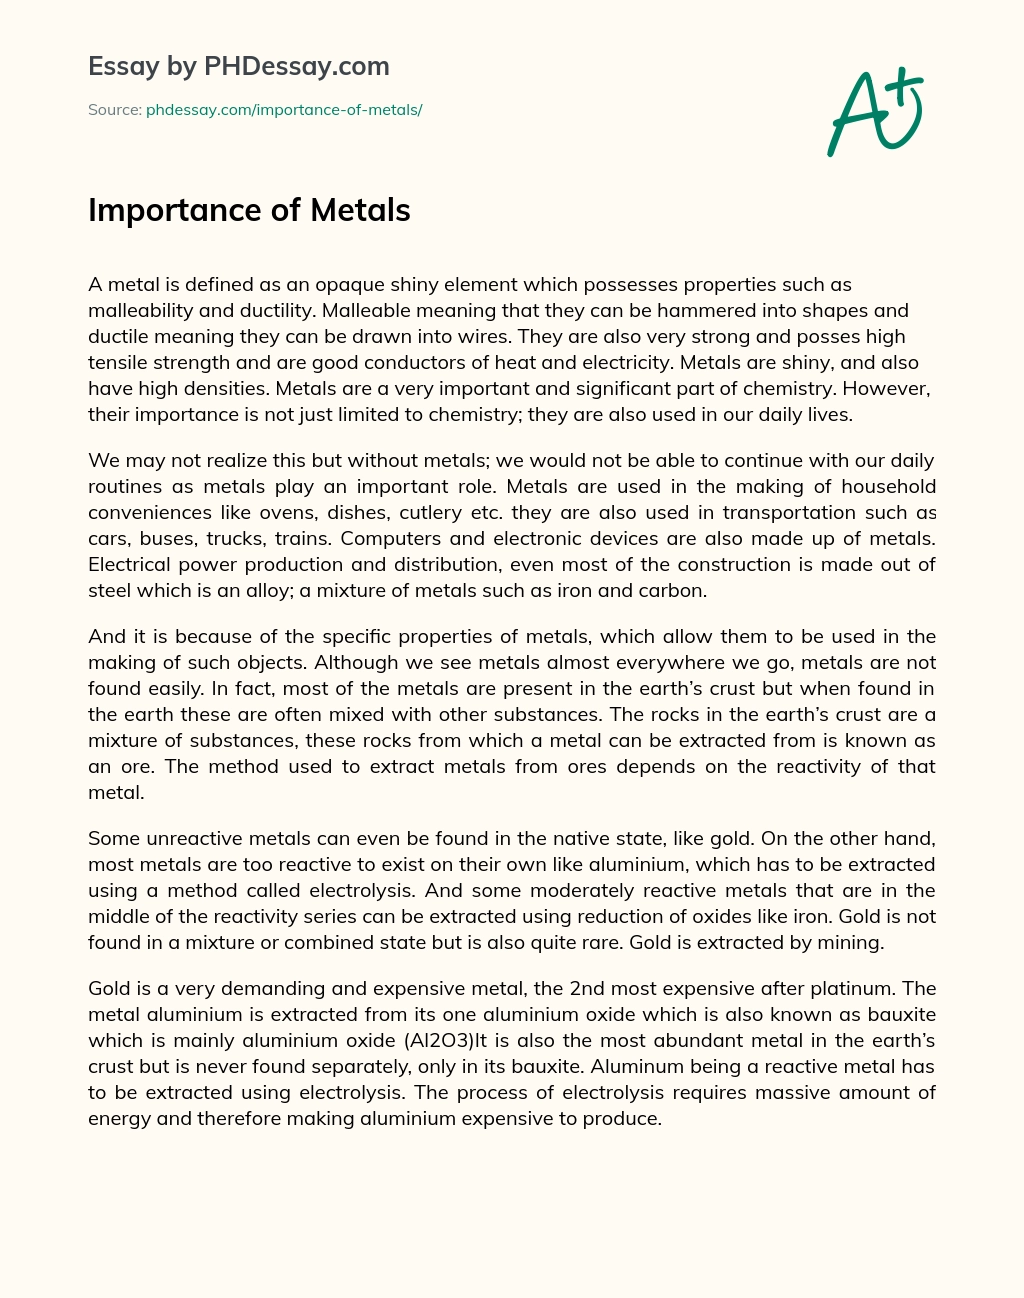 Importance of Metals essay